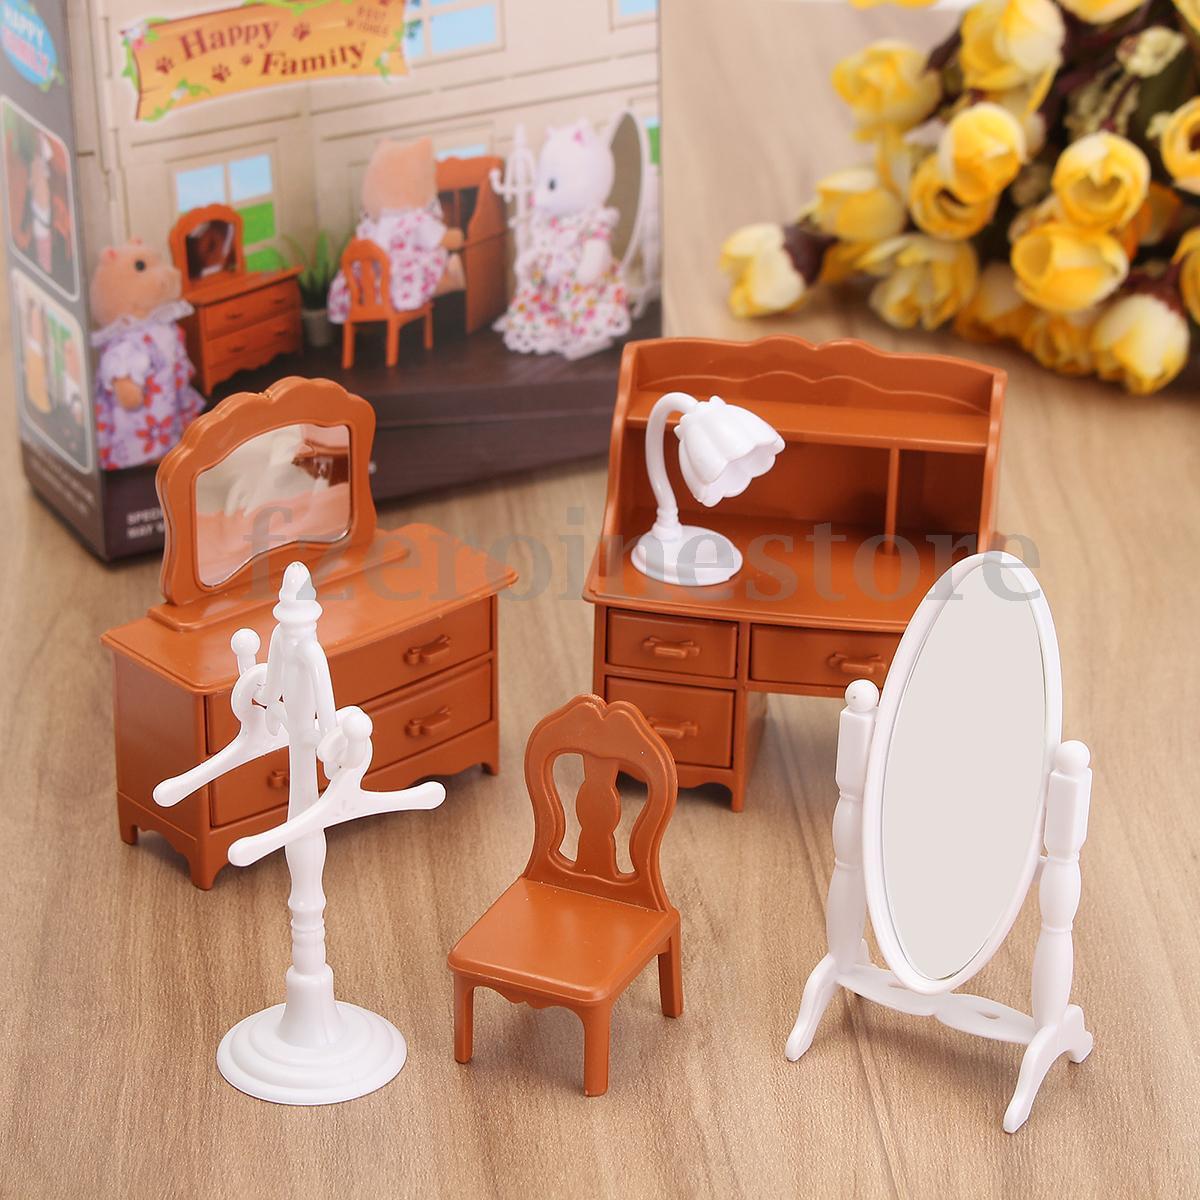 Kinderen Speelgoed Poppenhuis Speelgoed Miniatuur Woonkamer Kaptafel Meubels Sets Voor Mini Kinderen Poppenhuis Home Decor